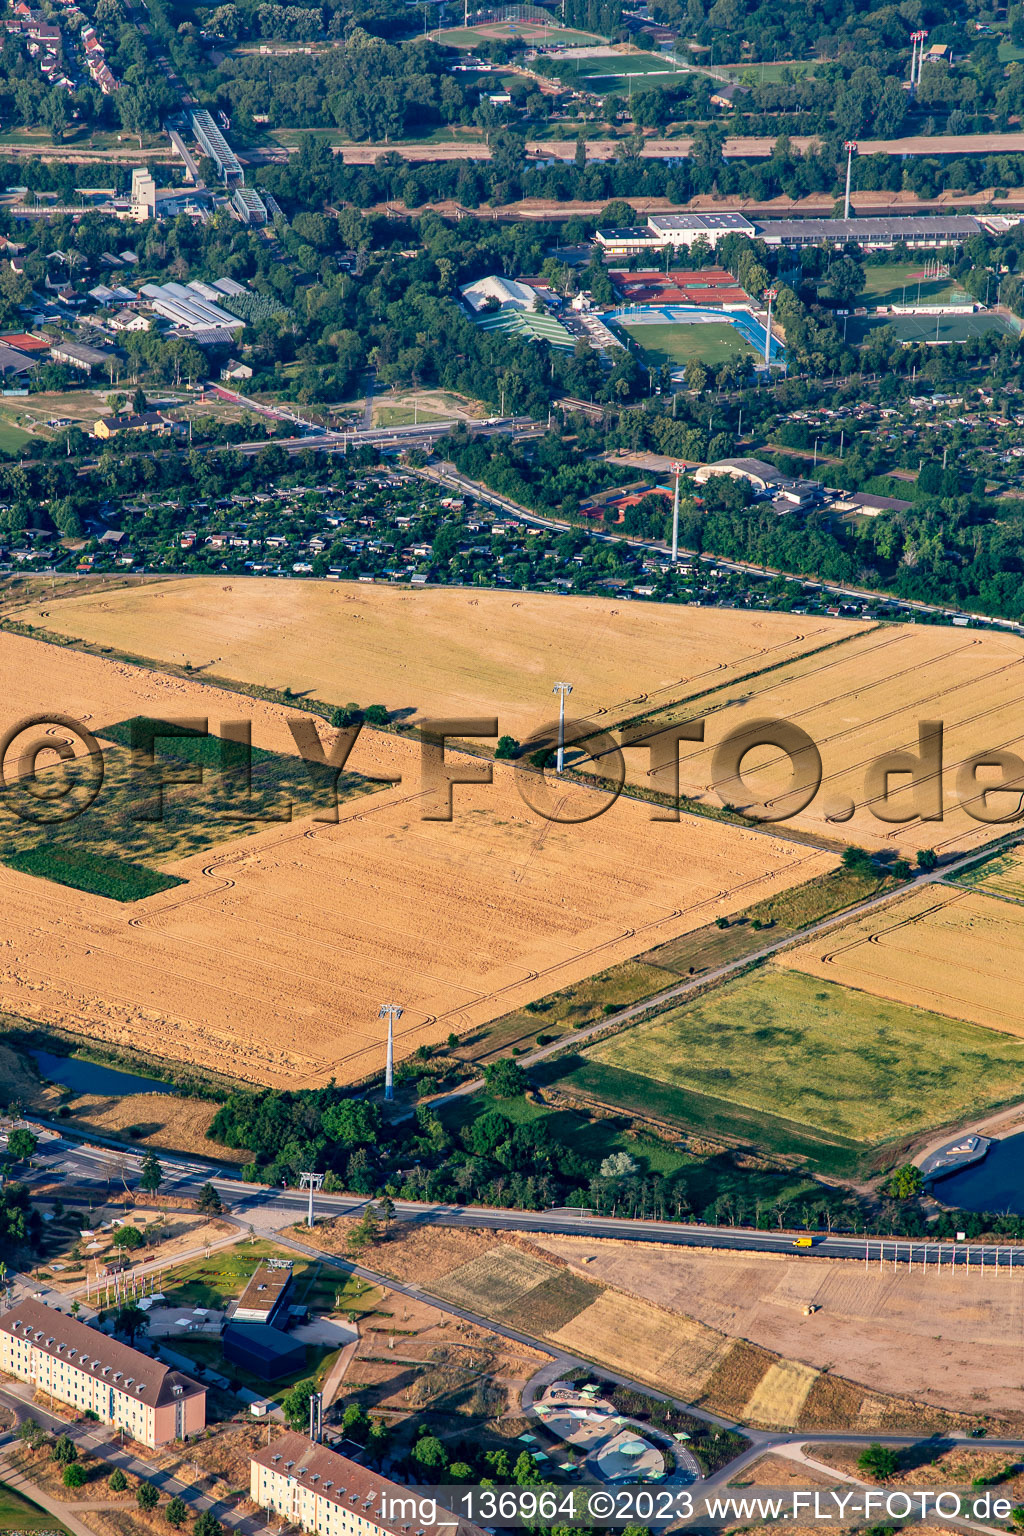 Vue aérienne de Téléphérique de Spinelli au parc Luisen du Salon fédéral des jardins Mannheim BUGA 2023 à le quartier Feudenheim in Mannheim dans le département Bade-Wurtemberg, Allemagne